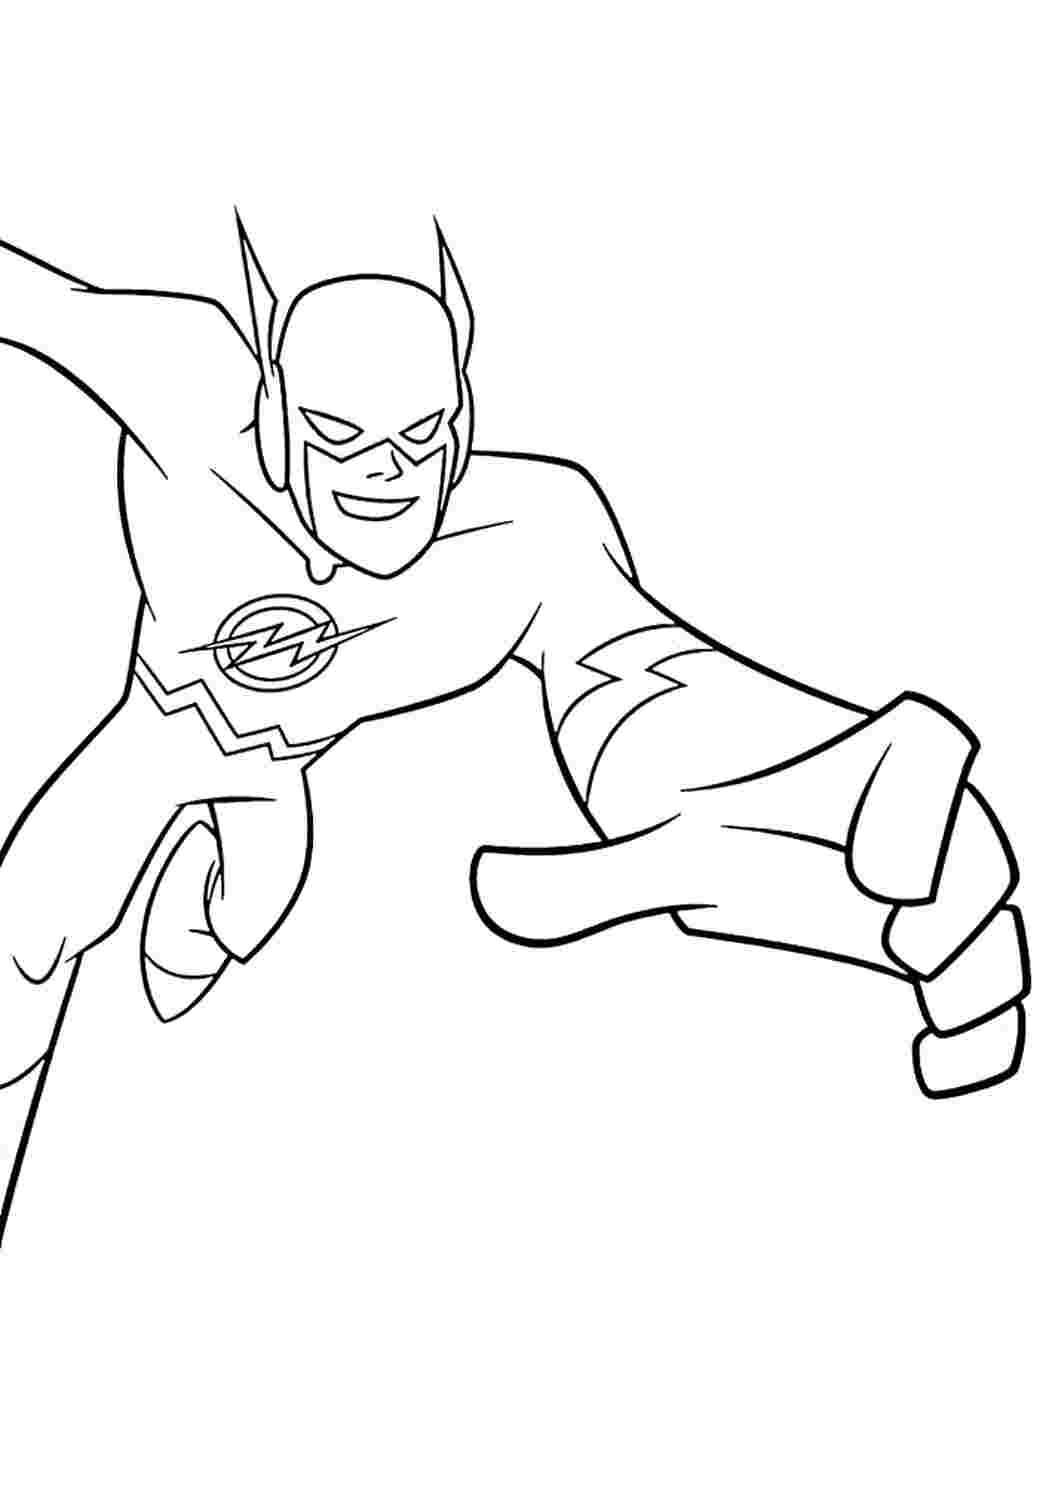 Раскраска супергероя Флэш Раскраски скачать и распечатать бесплатно.